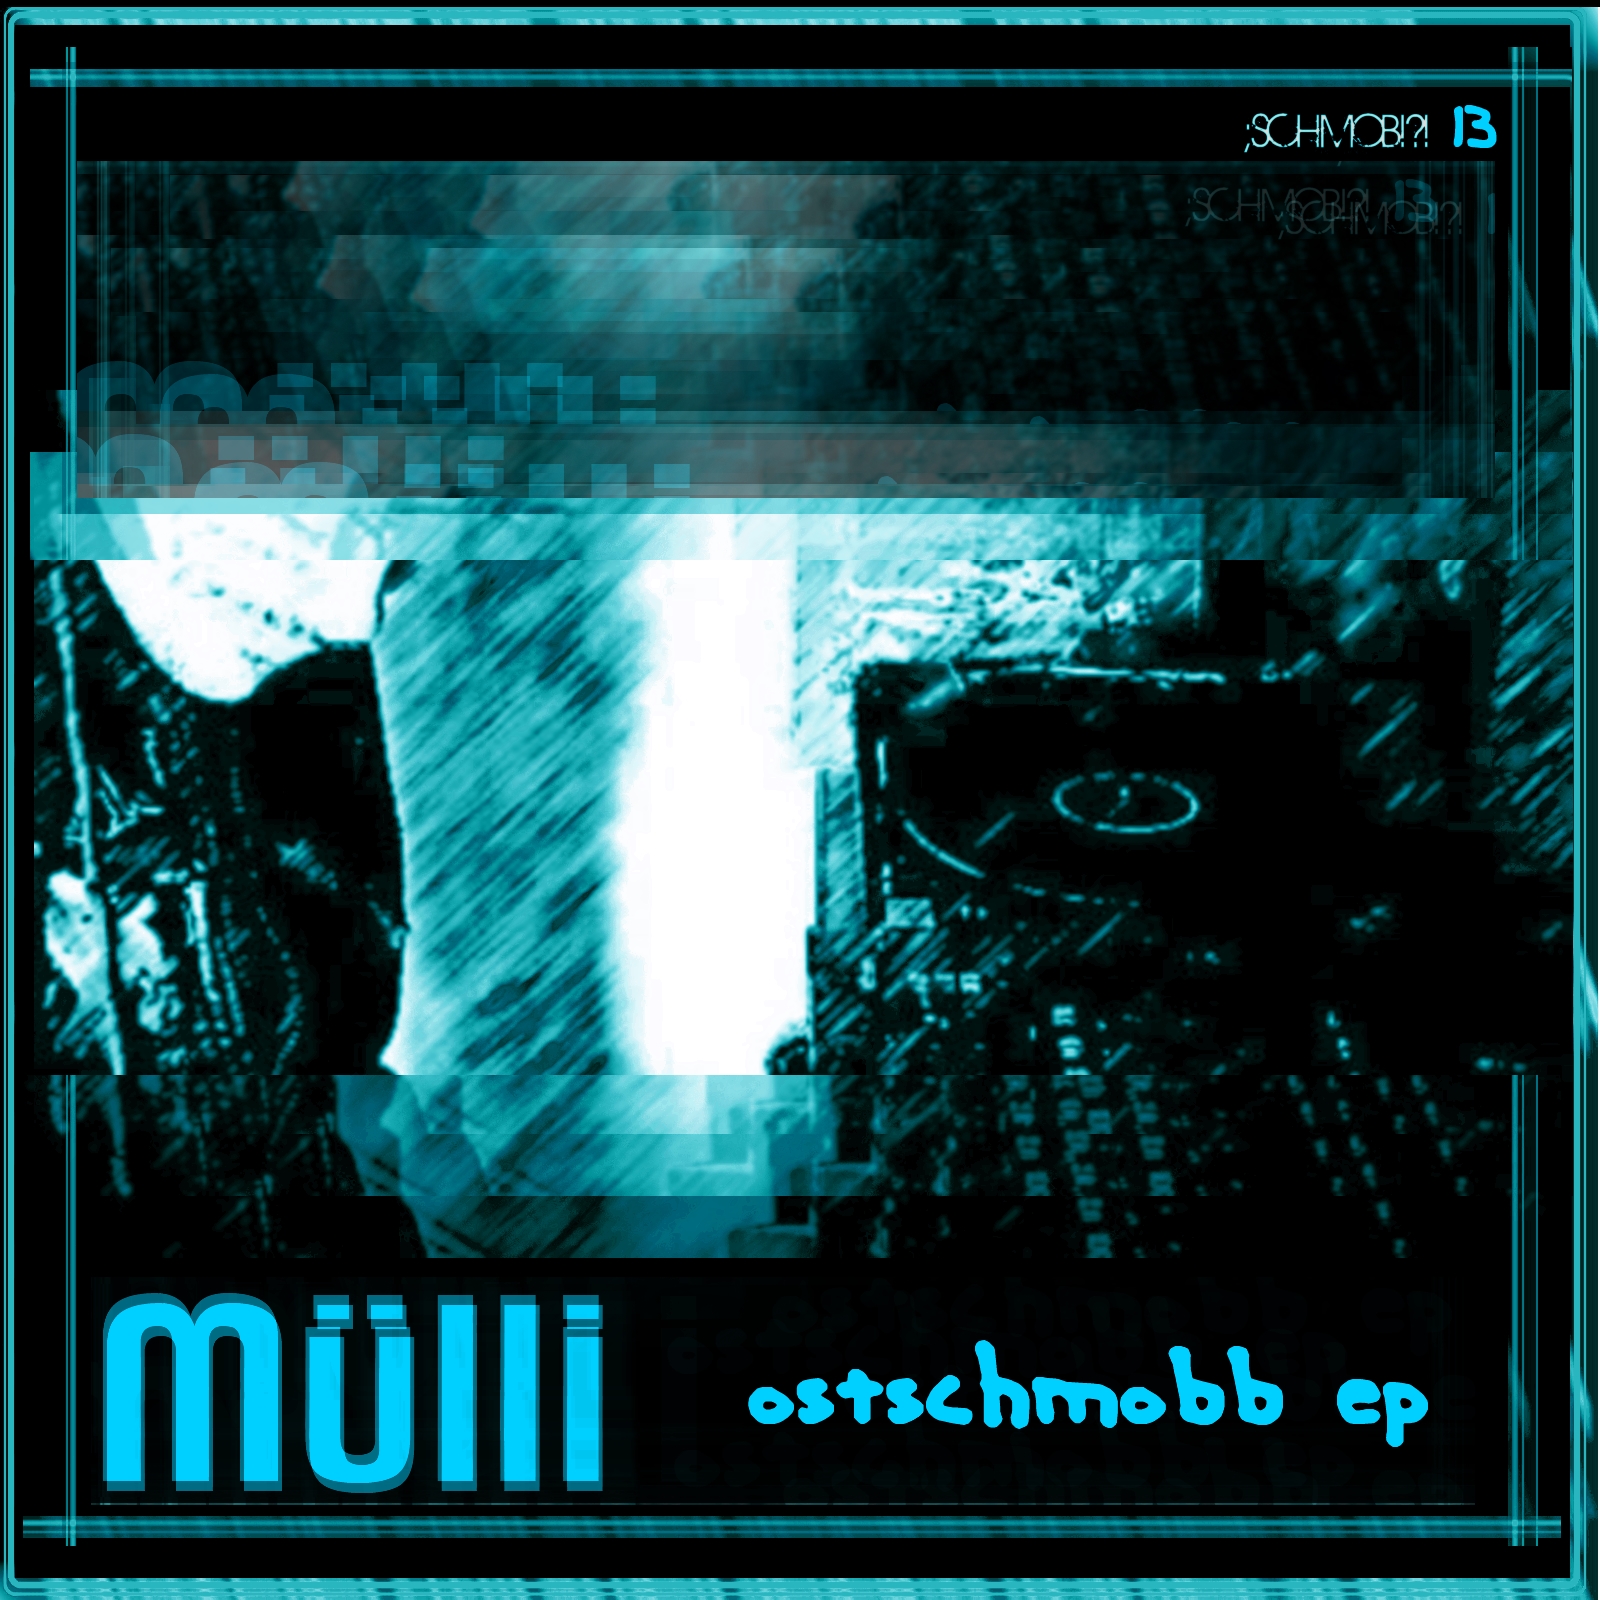 Mülli – Ostschmobb EP